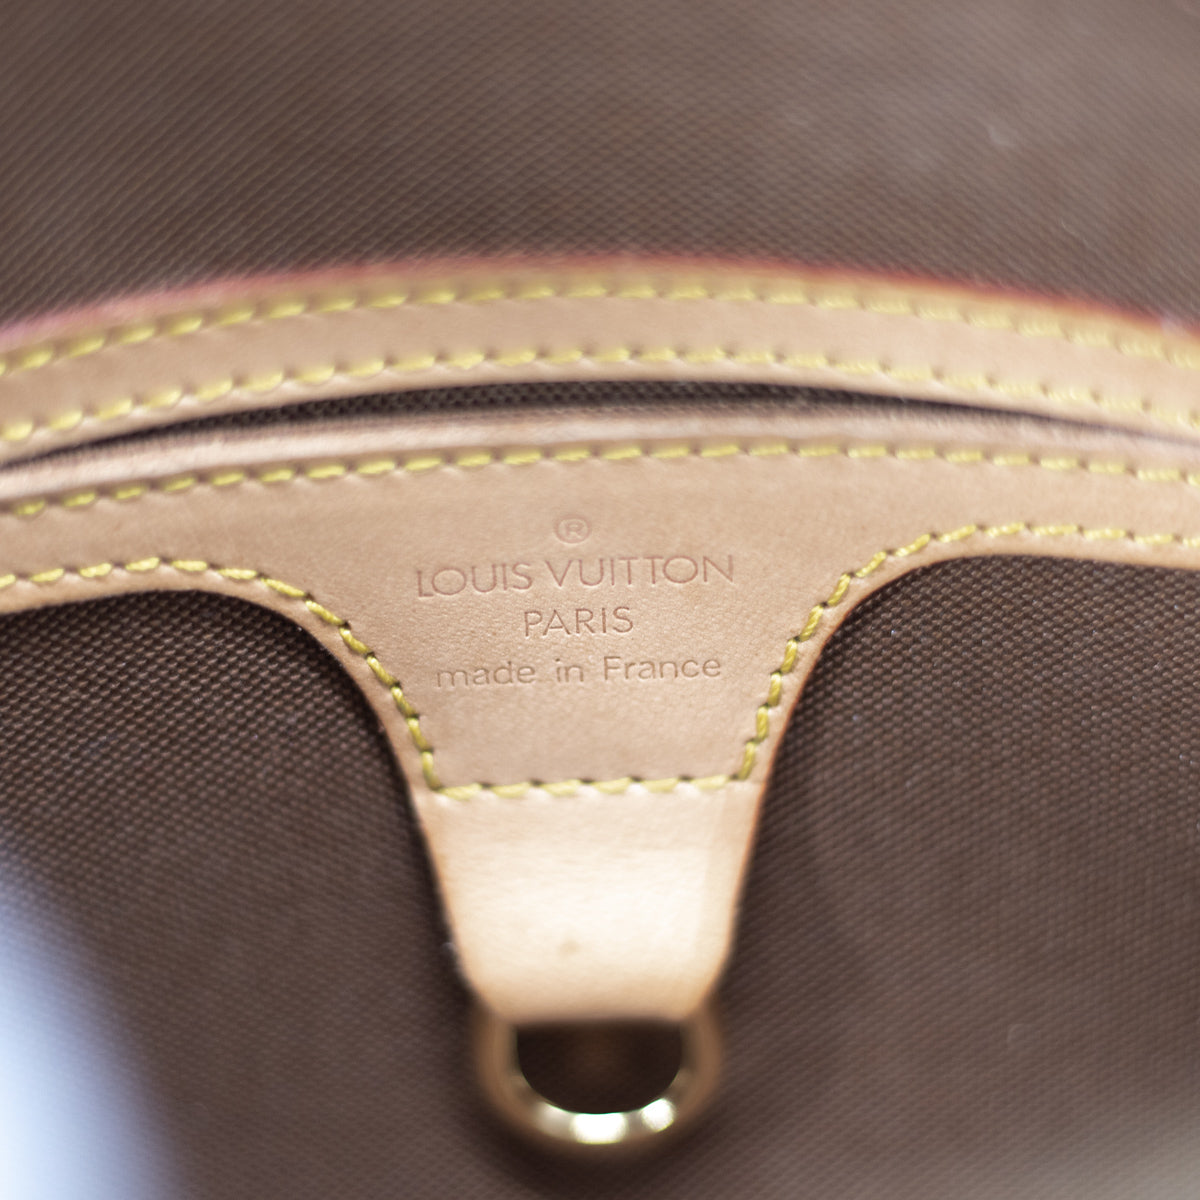 Initiales leather belt Louis Vuitton Multicolour size 90 cm in